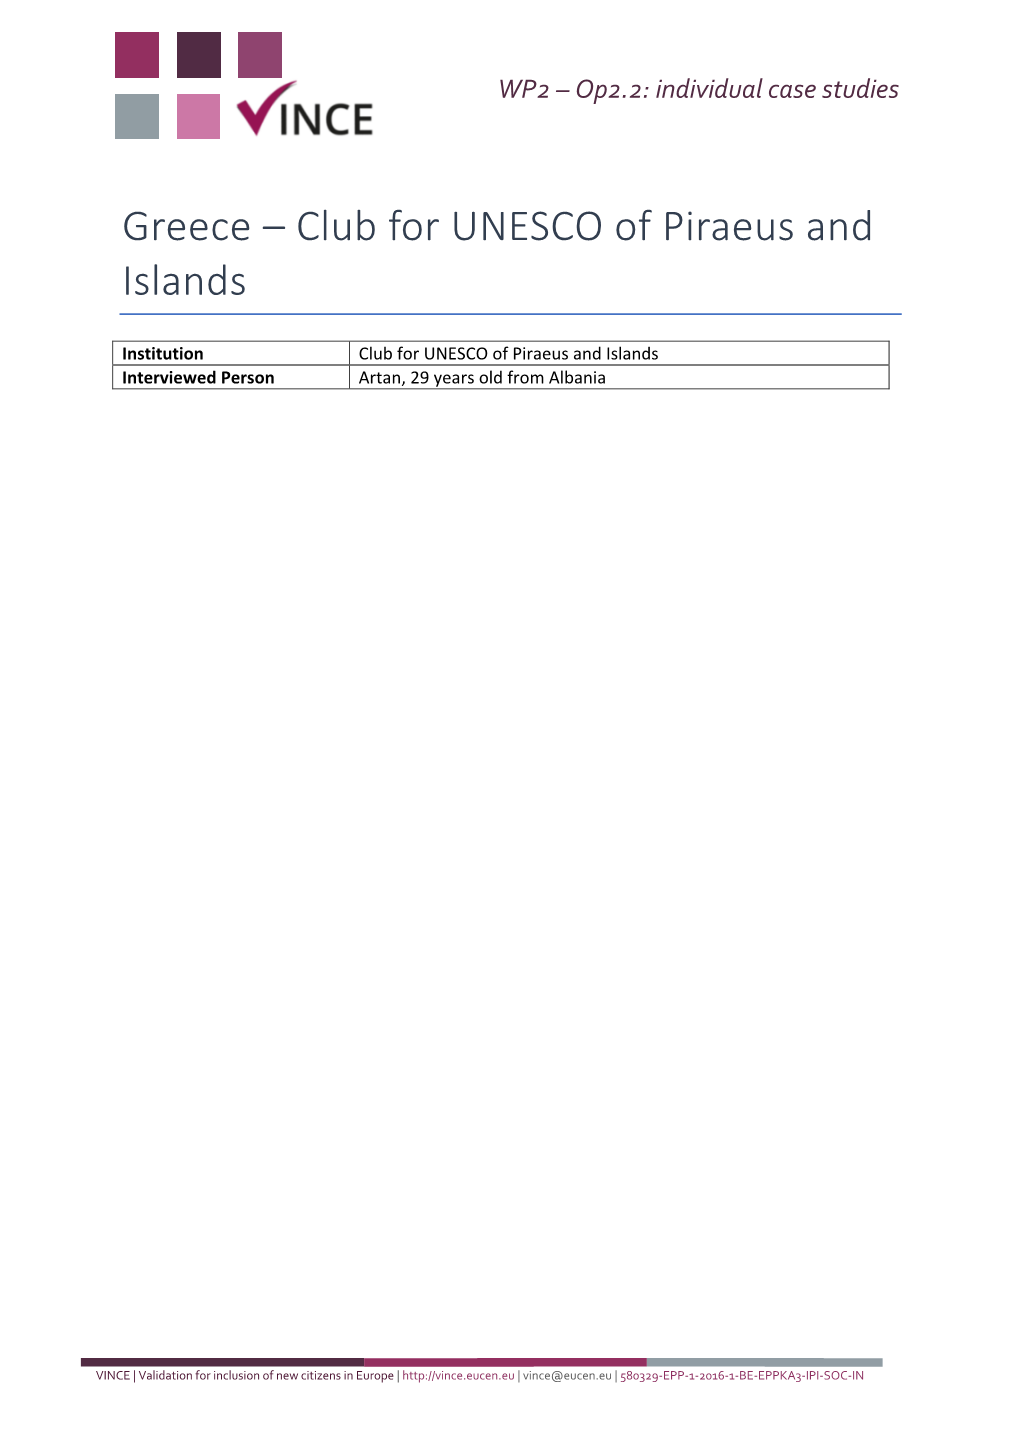 Greece – Club for UNESCO of Piraeus and Islands